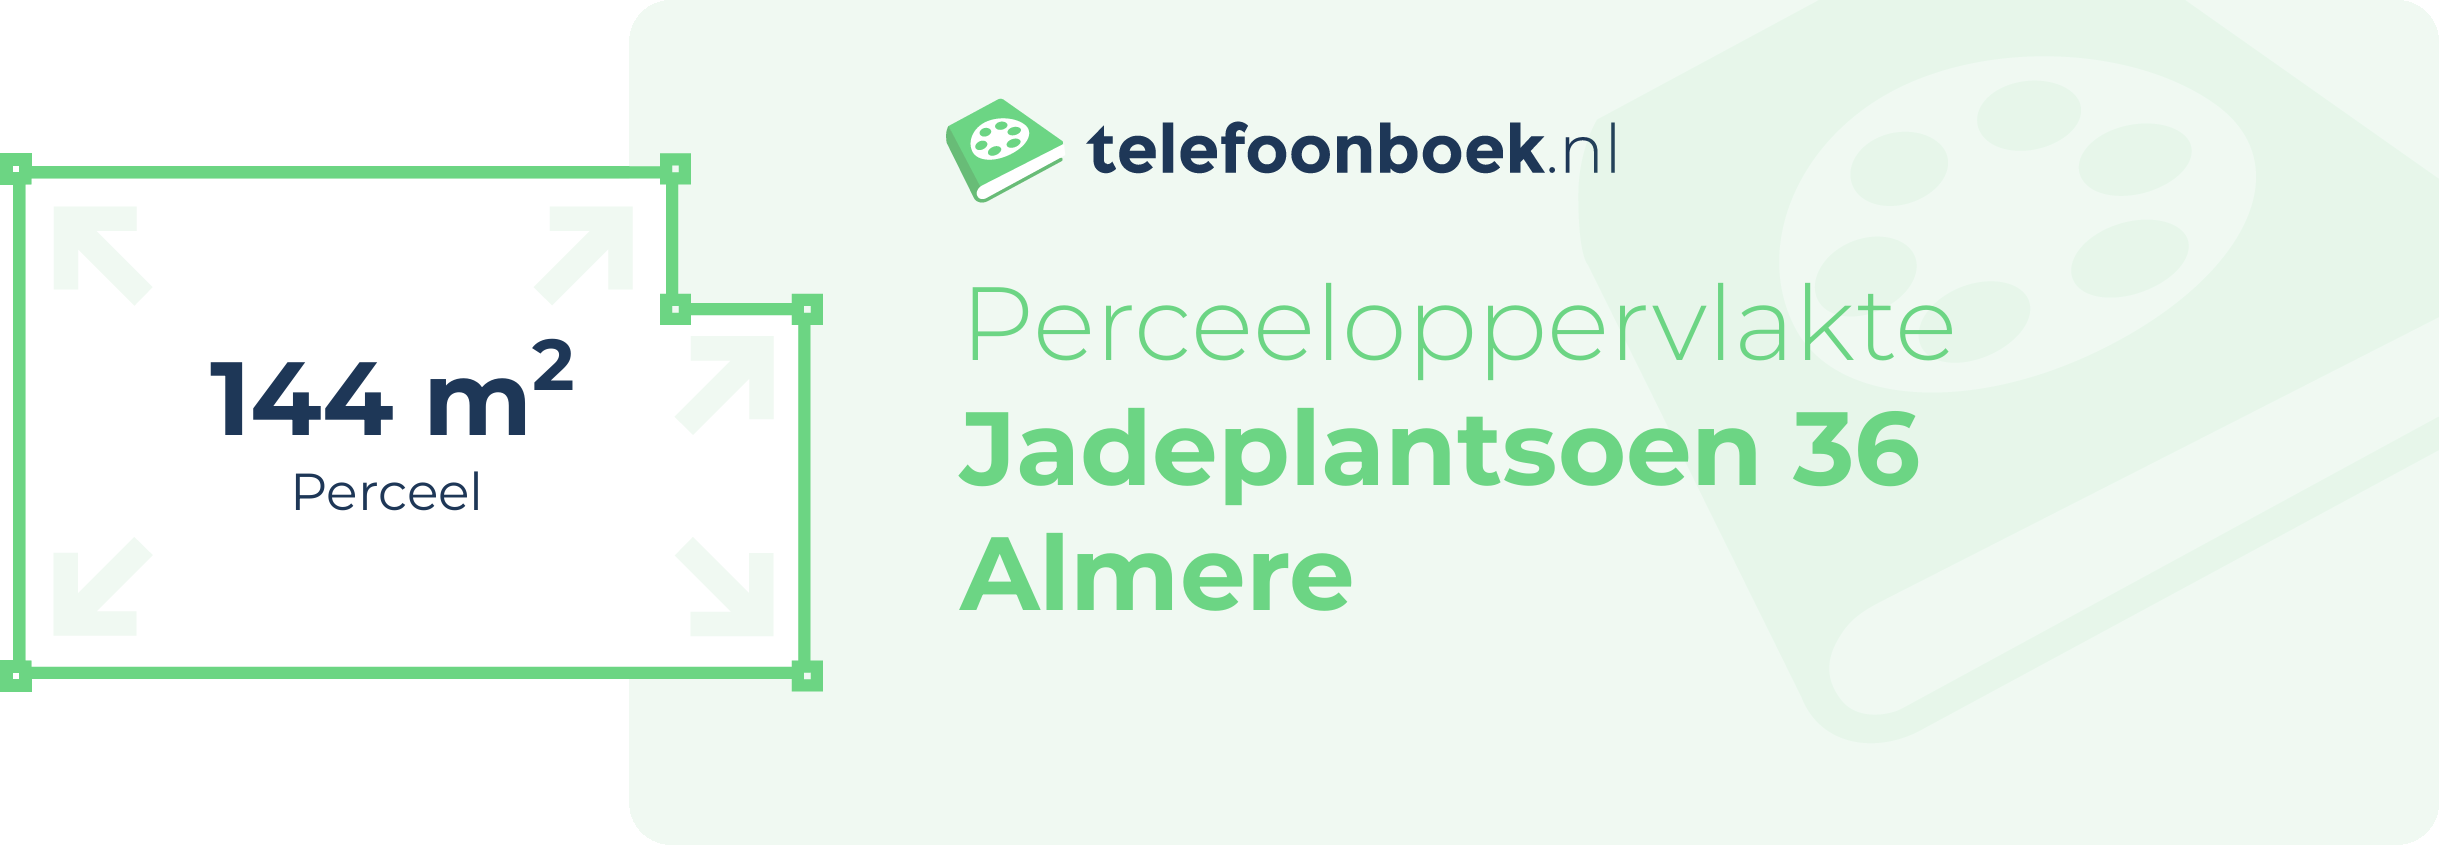 Perceeloppervlakte Jadeplantsoen 36 Almere